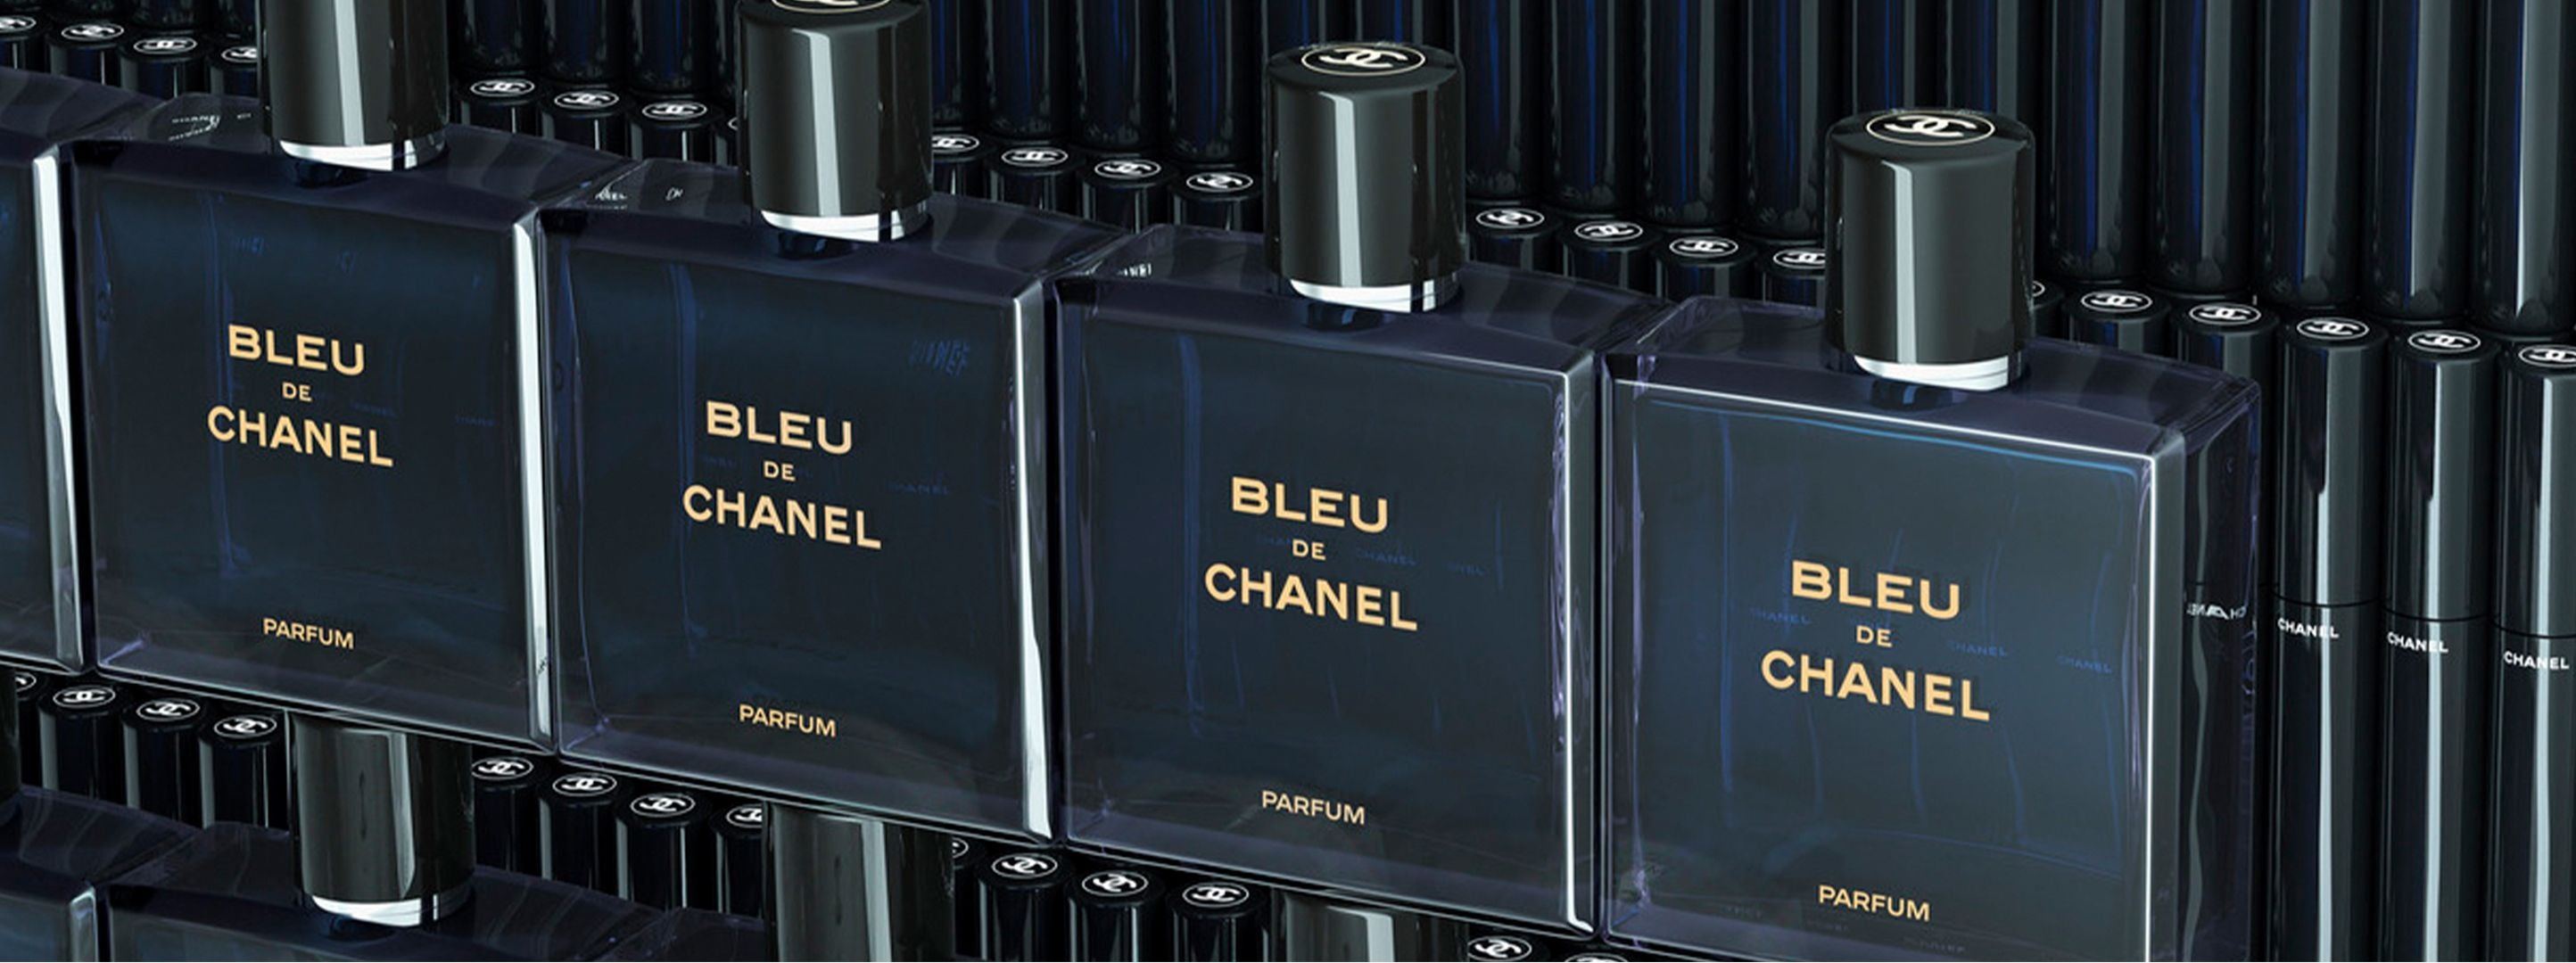 Chanel, Men's Fragrance